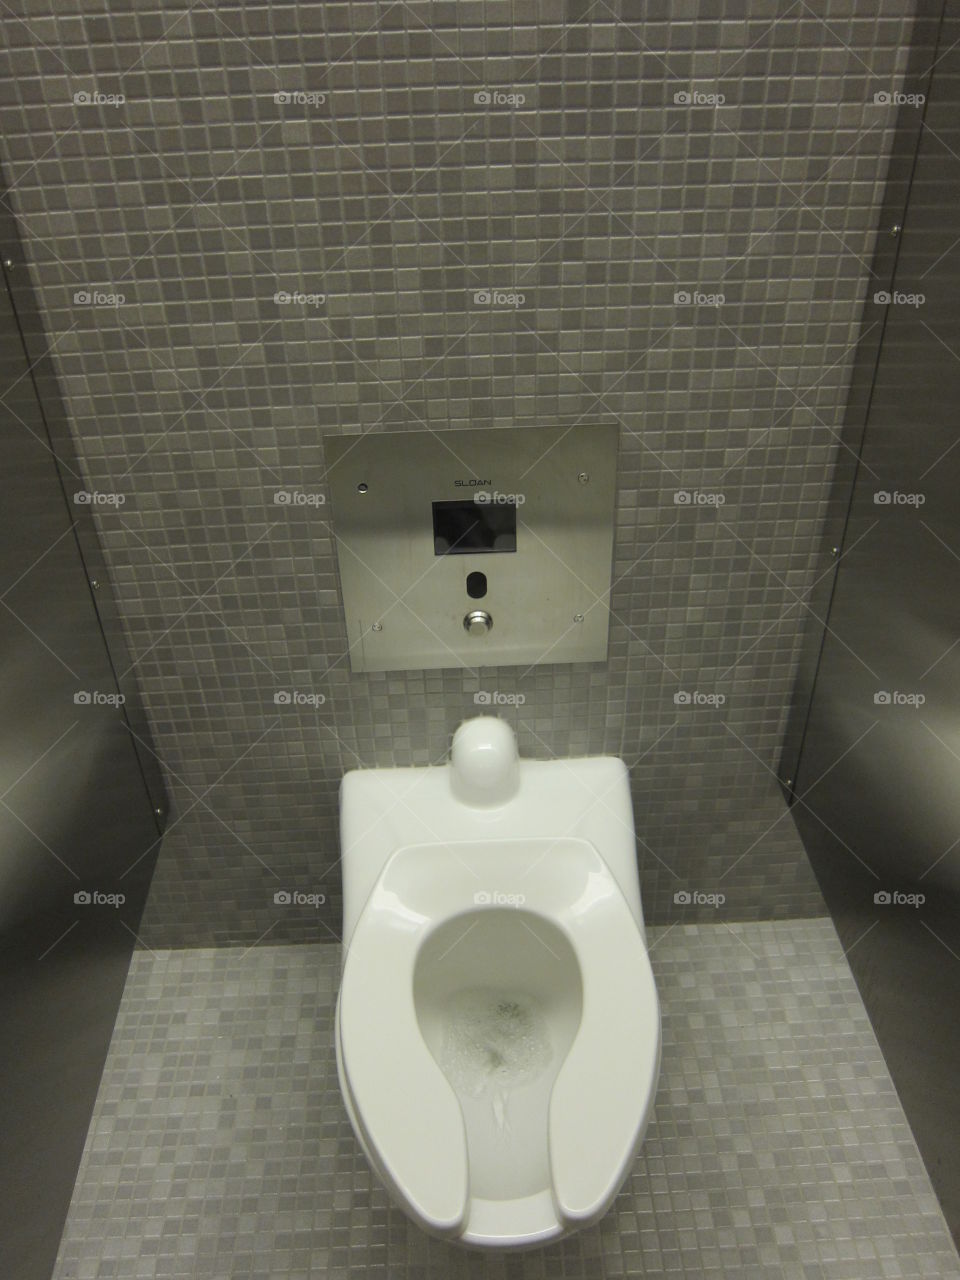 WTC toilet